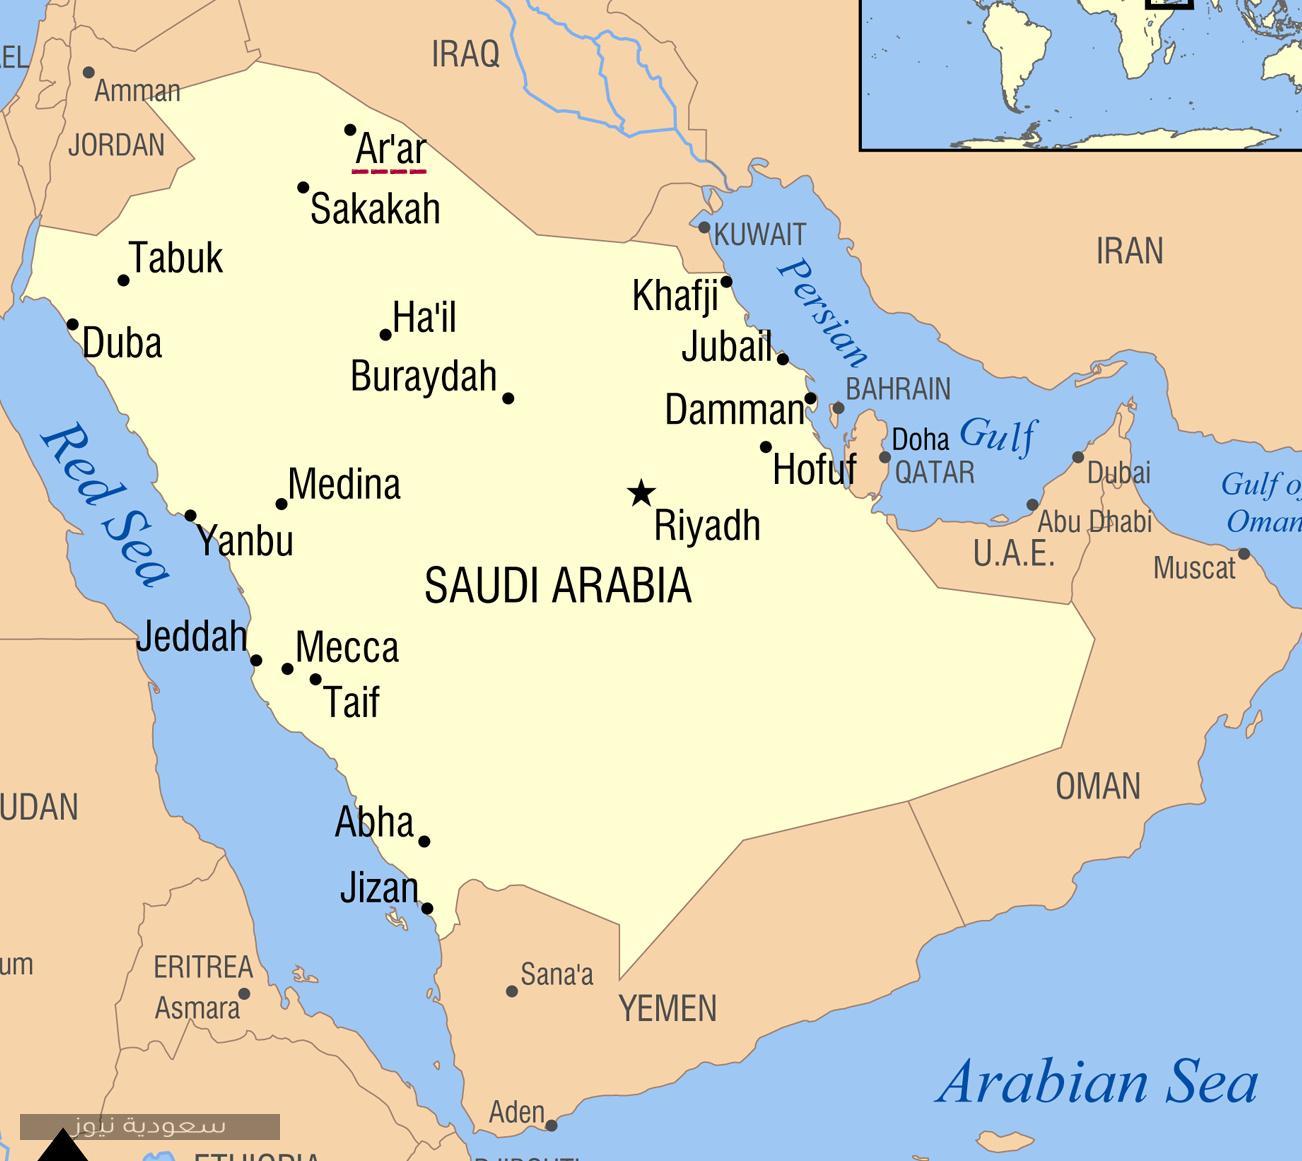 الرمز البريدي لمدينة عرعر في المملكة العربية السعودية وأهميته